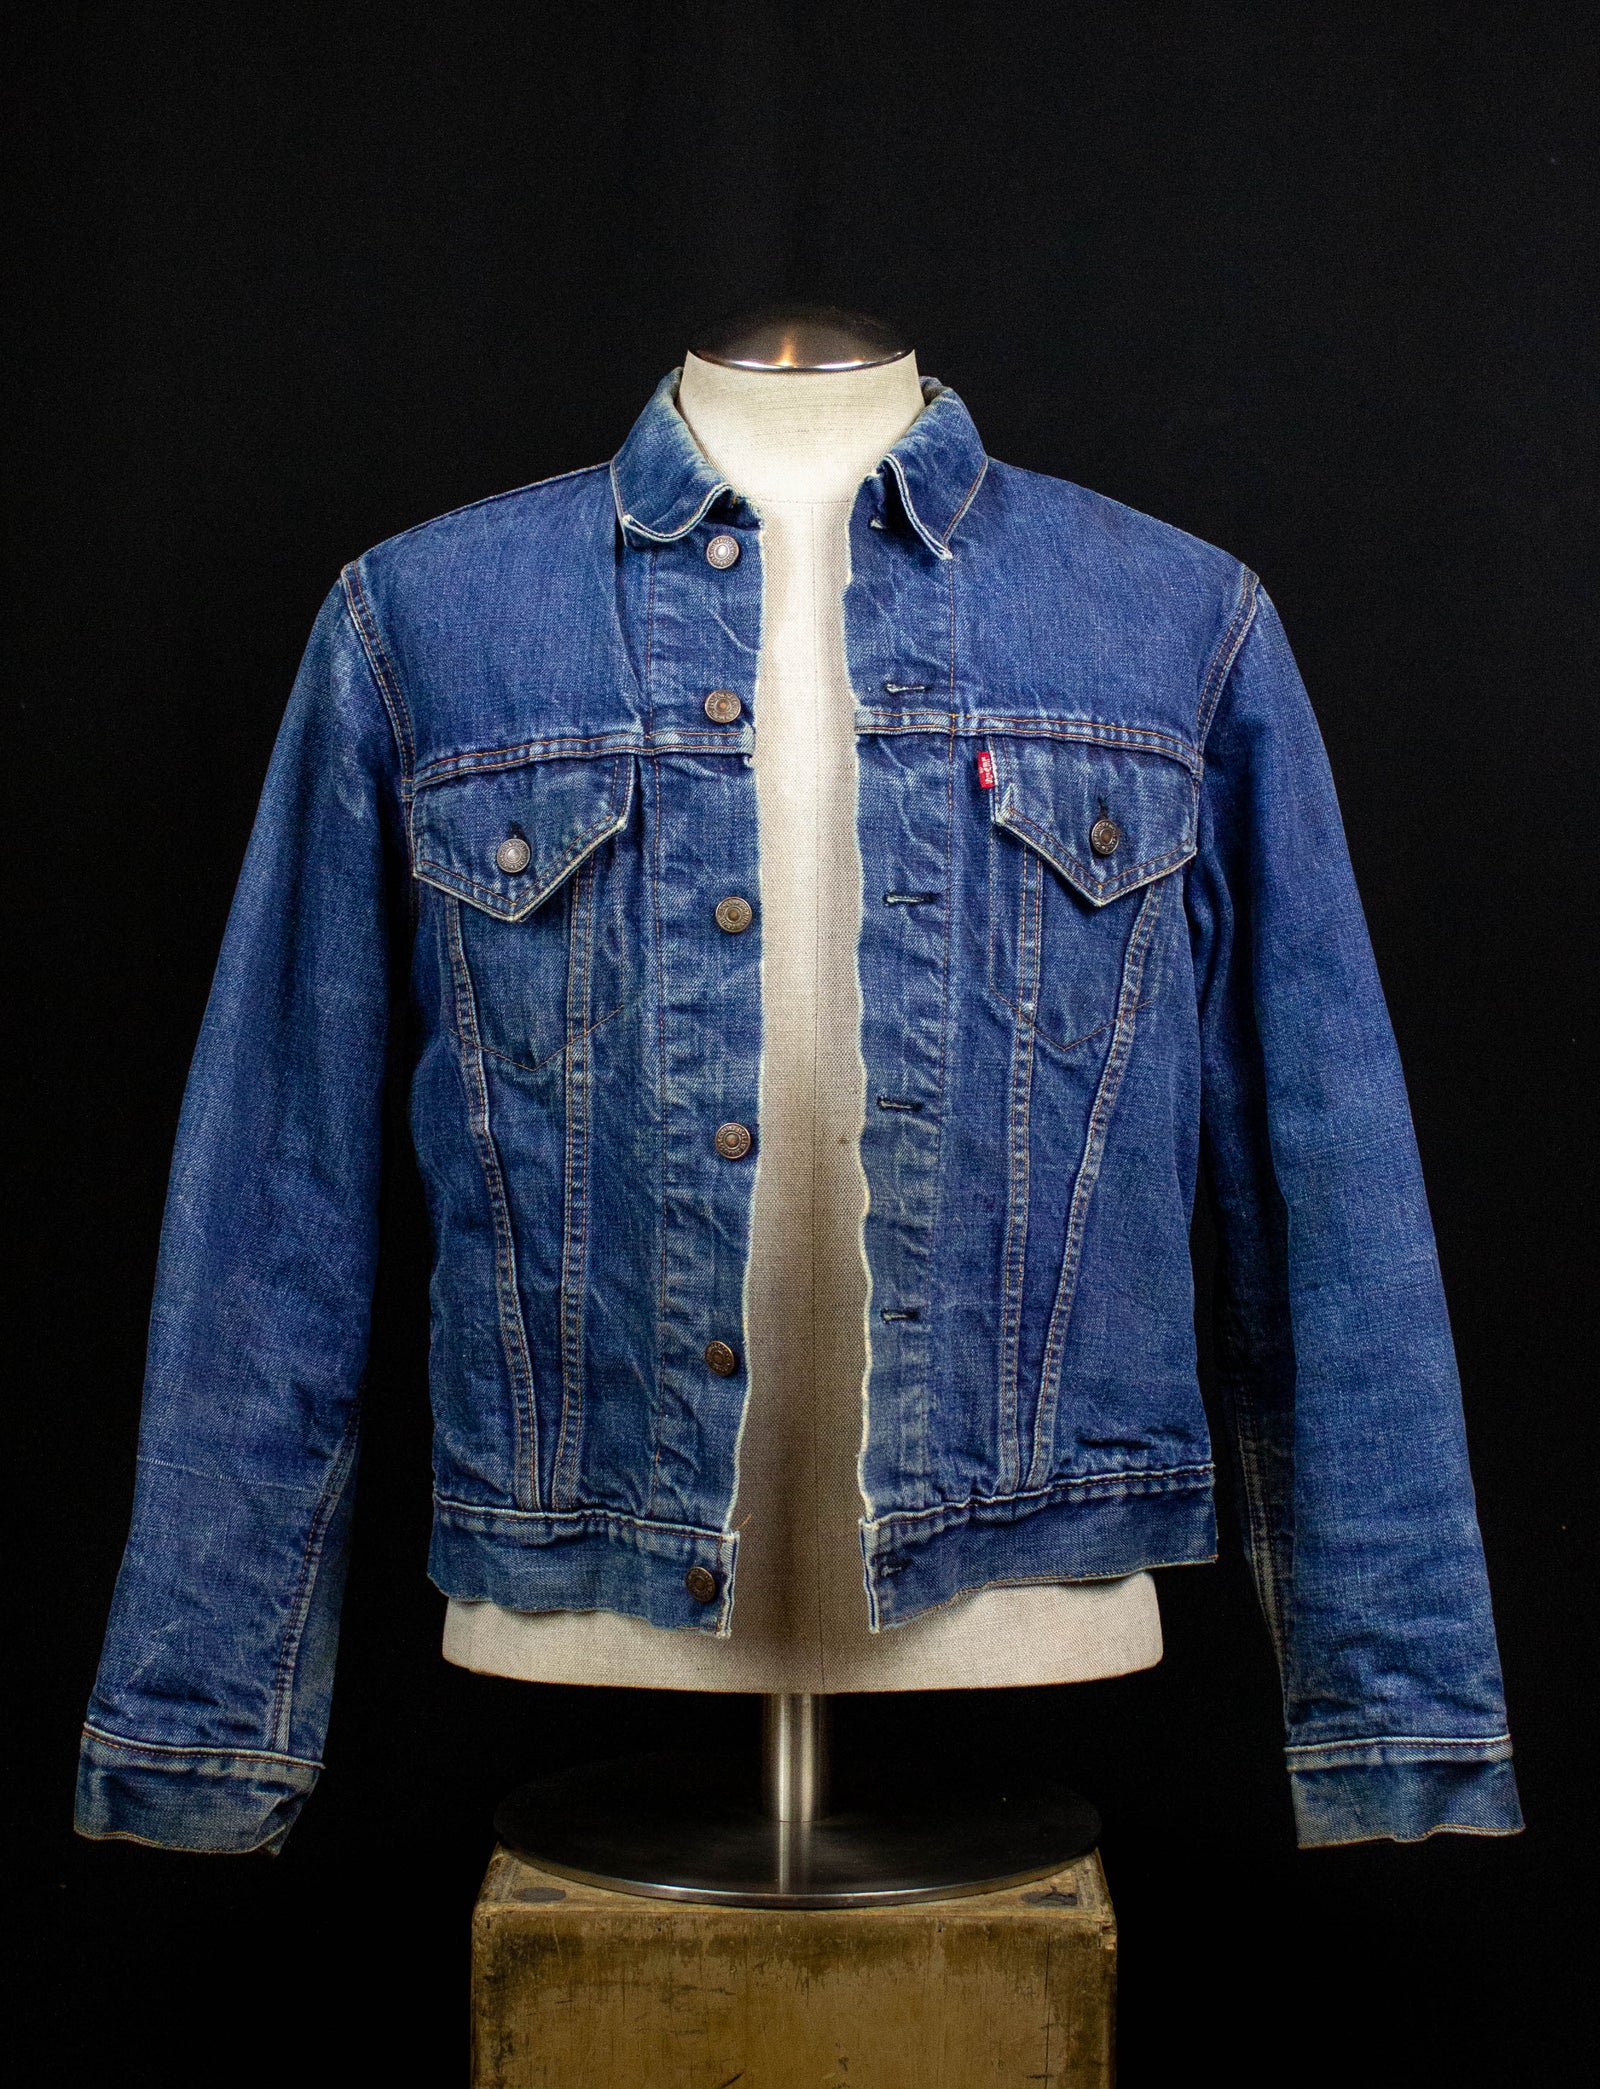 Vintage 70's Denim Jacket